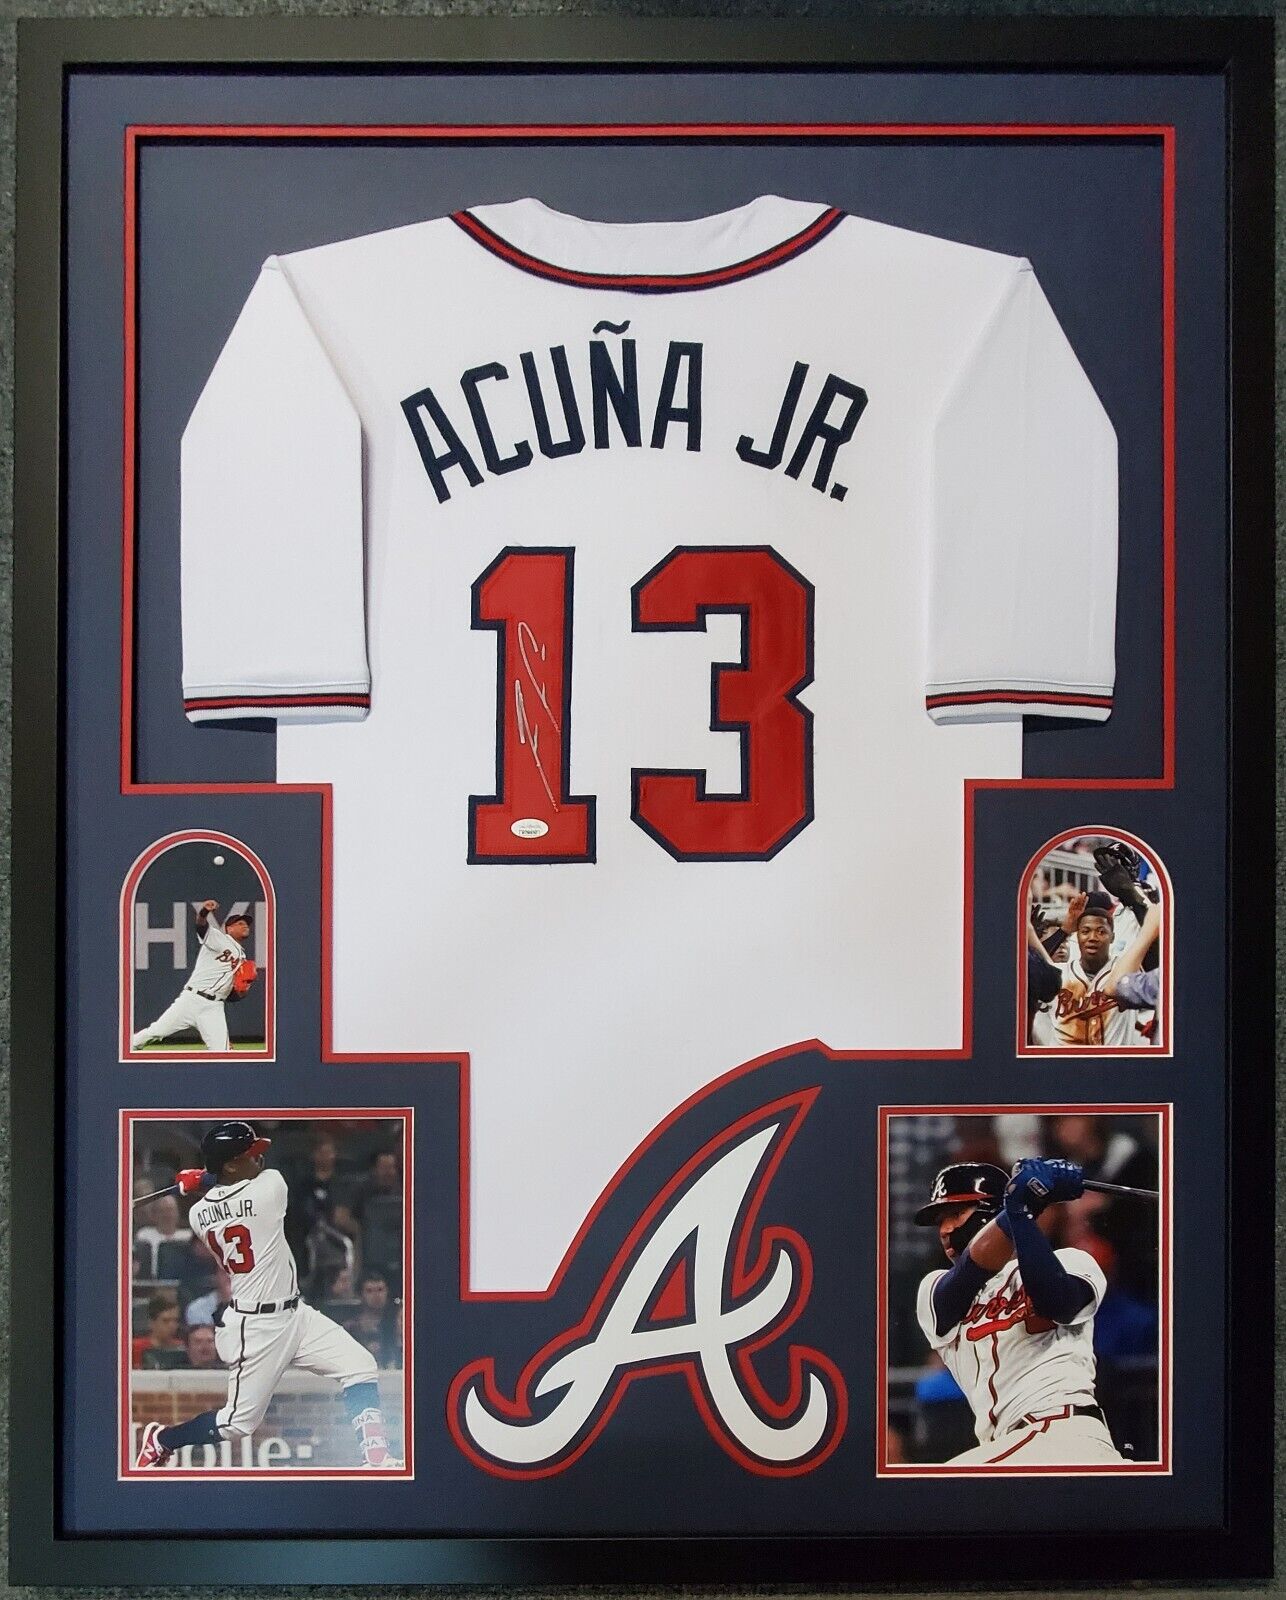 Framed Atlanta Braves Ronald Acuna Jr Autographed Signed Jersey